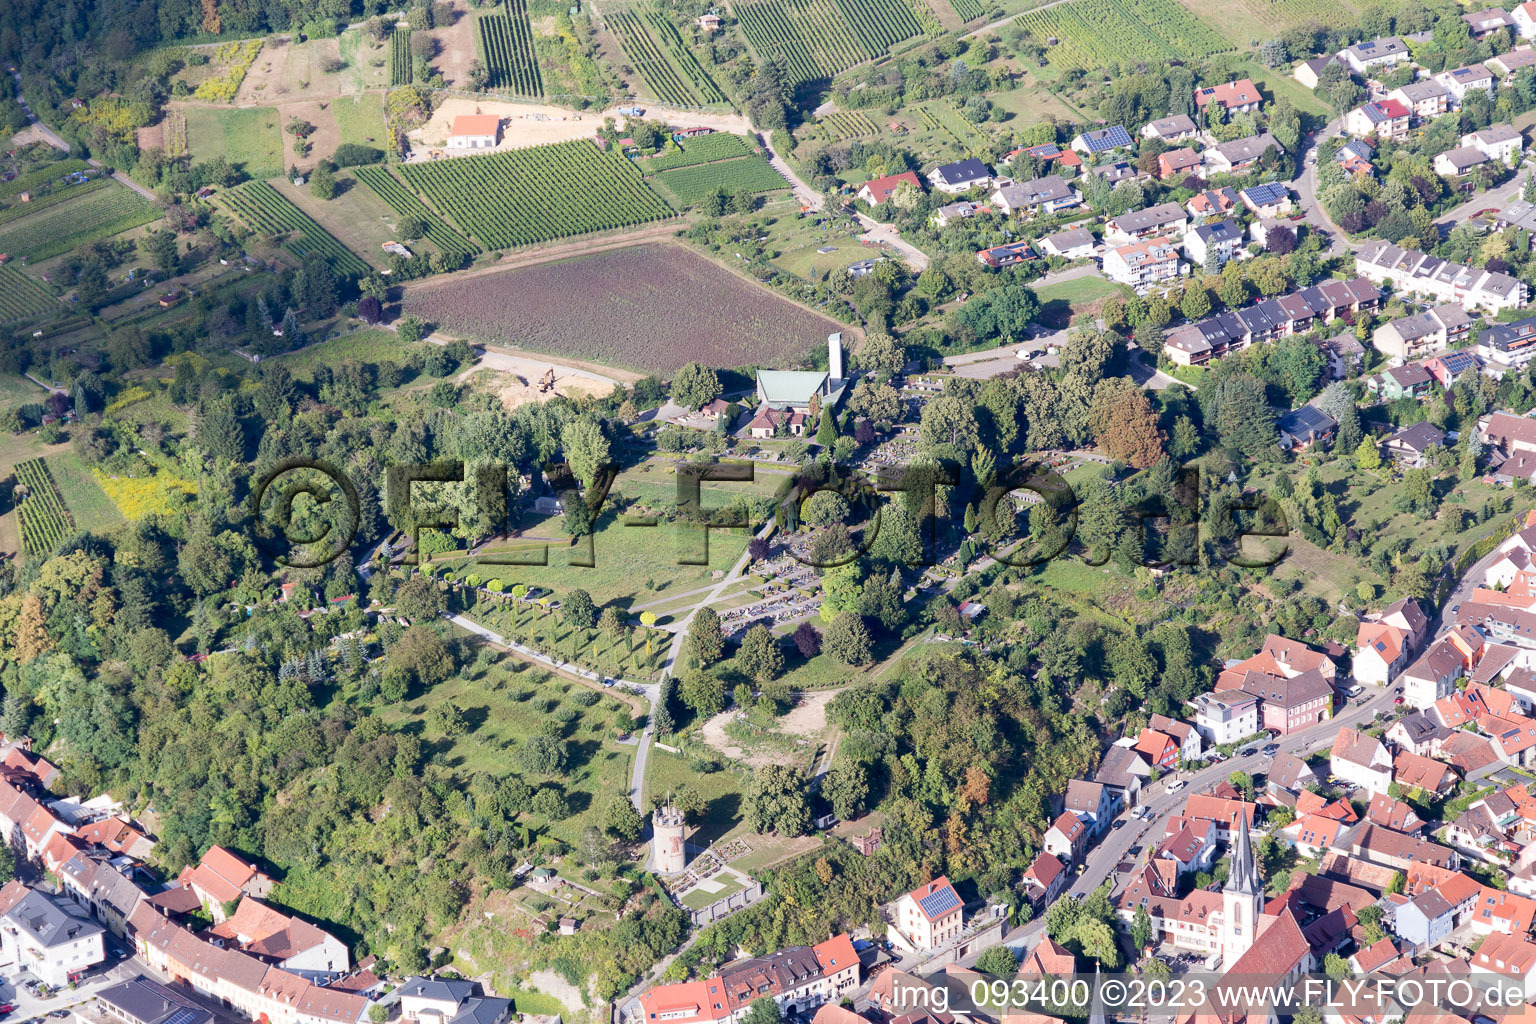 Weingarten im Bundesland Baden-Württemberg, Deutschland aus der Luft betrachtet